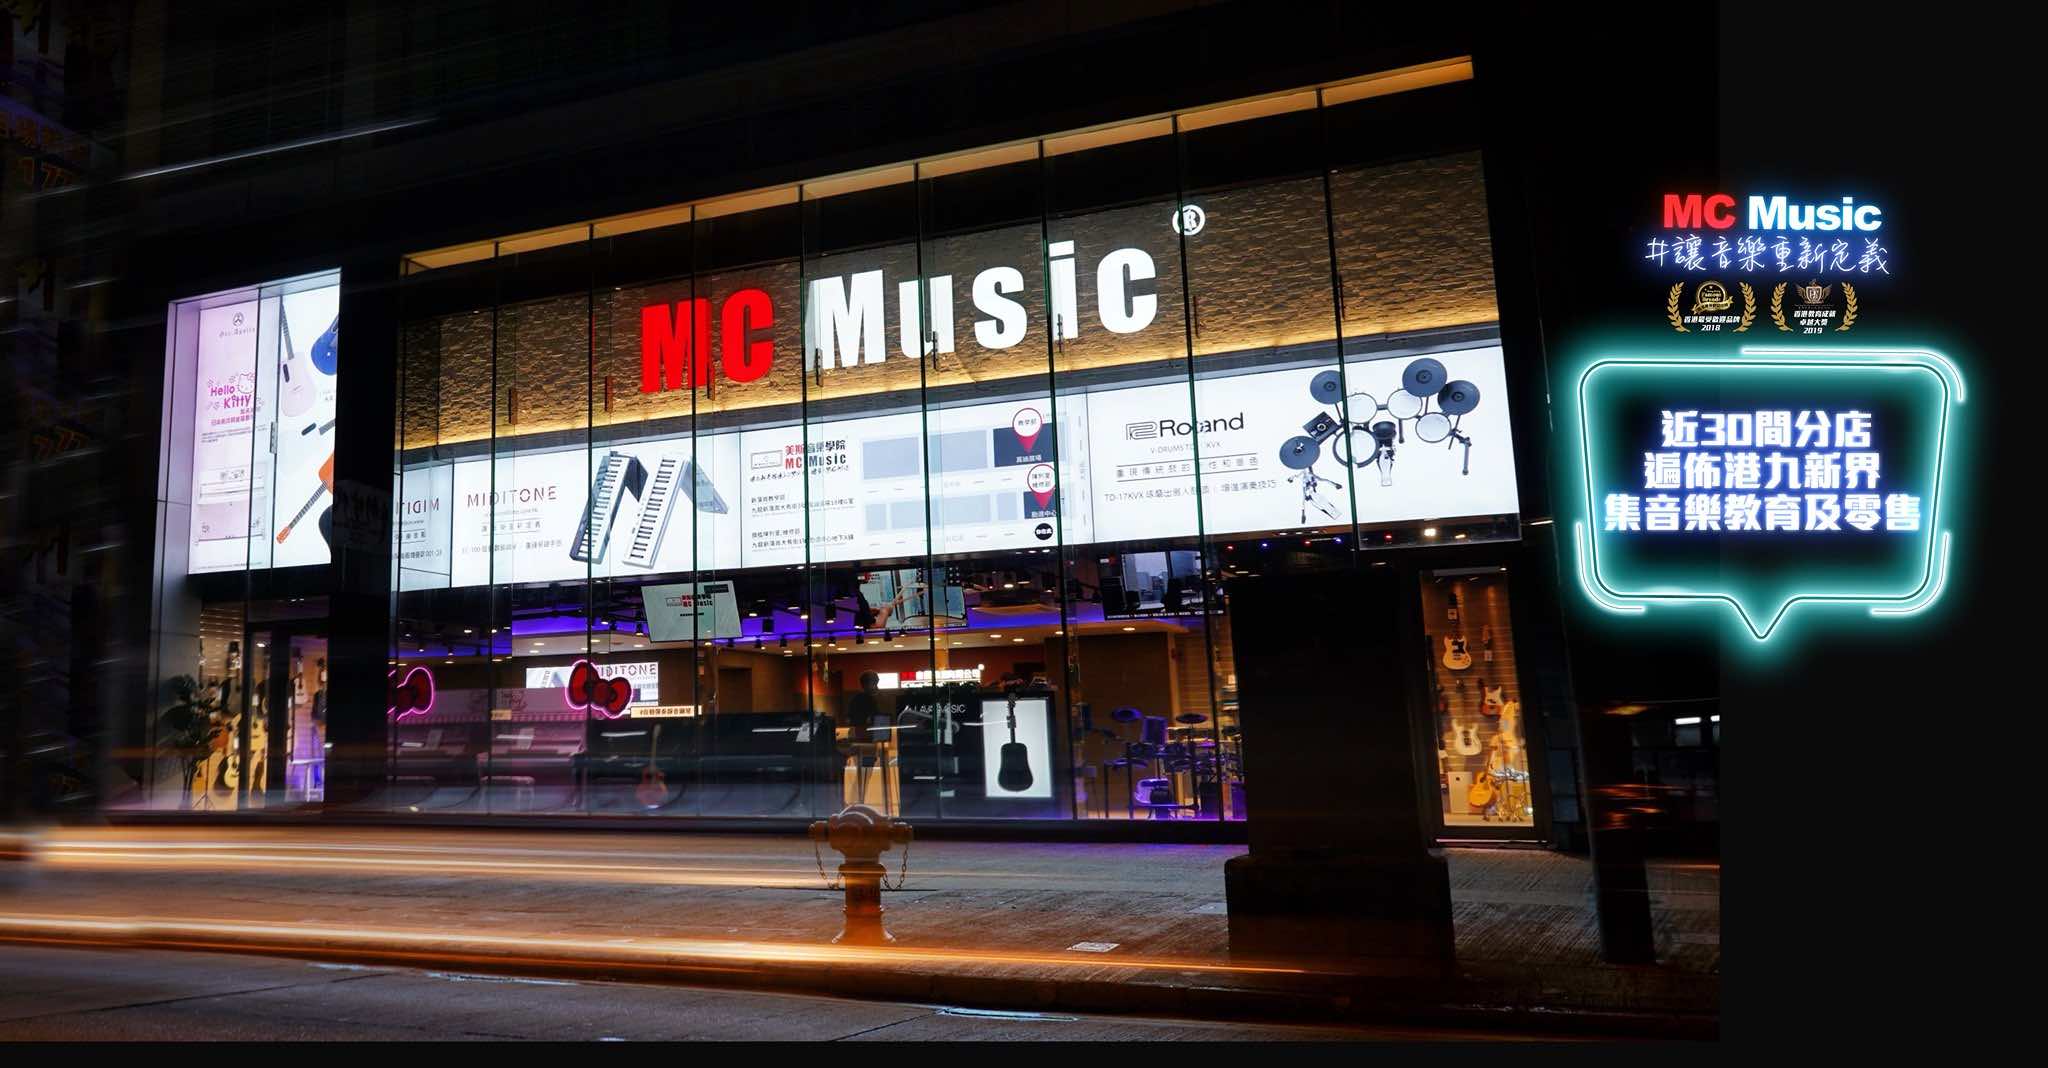 美斯音樂學院MC Music的特許經營香港區加盟店項目9